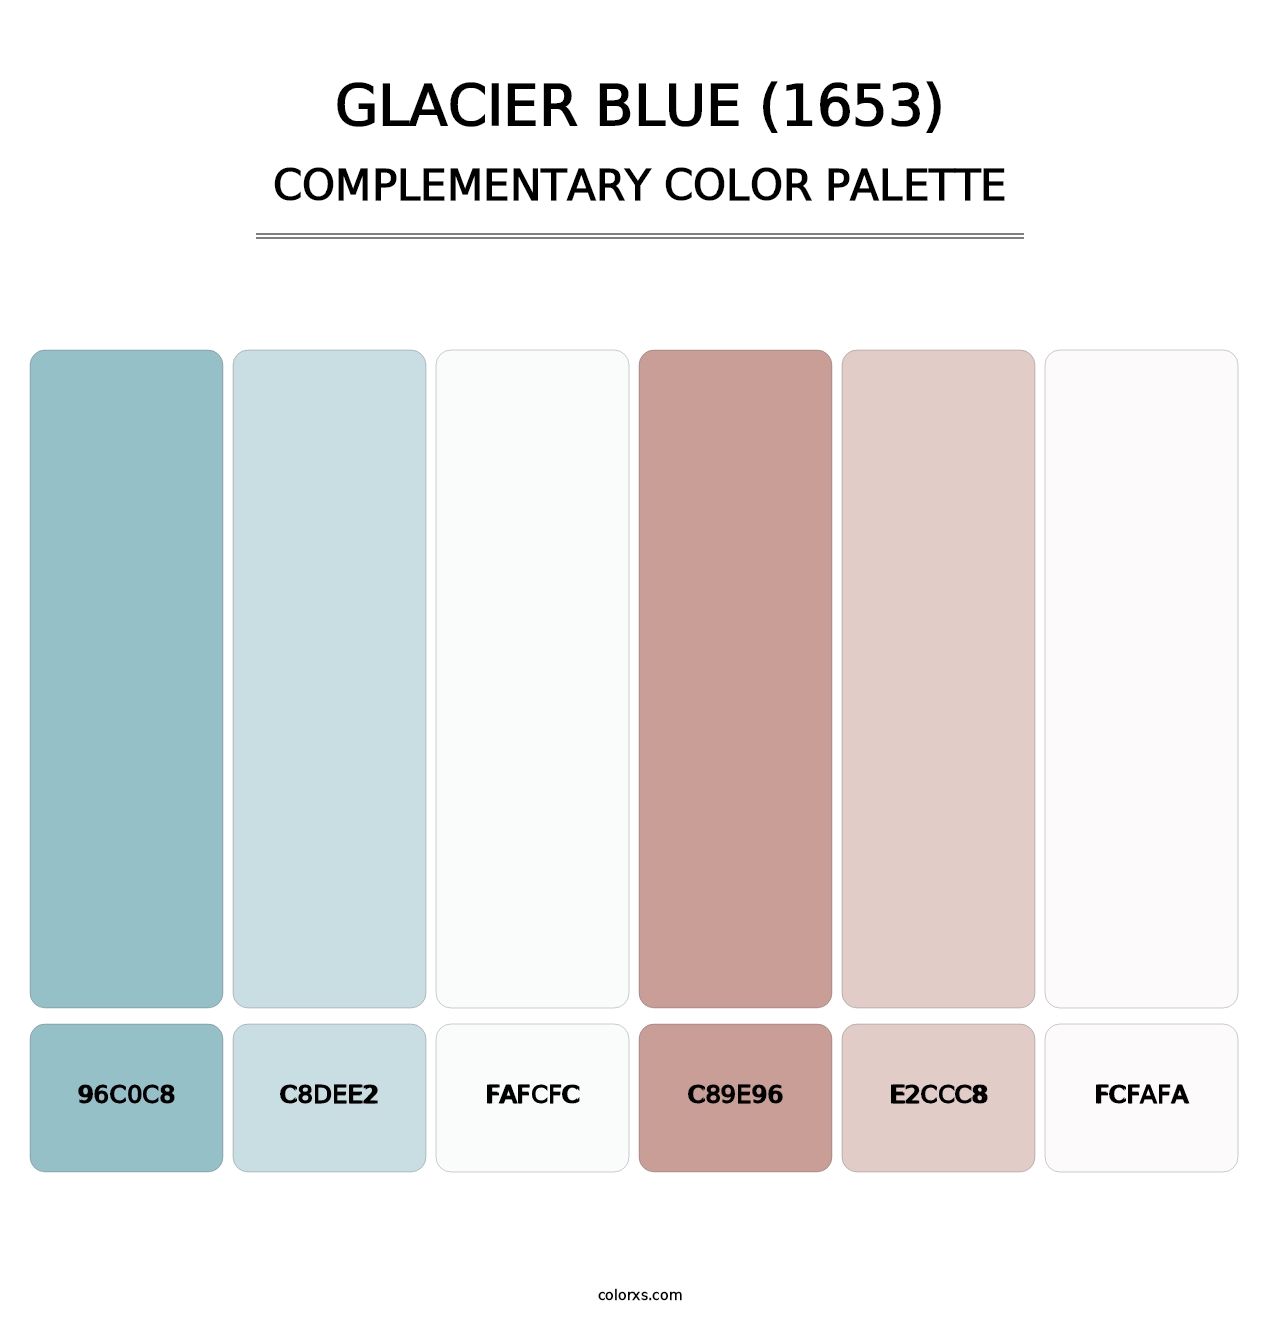 Glacier Blue (1653) - Complementary Color Palette